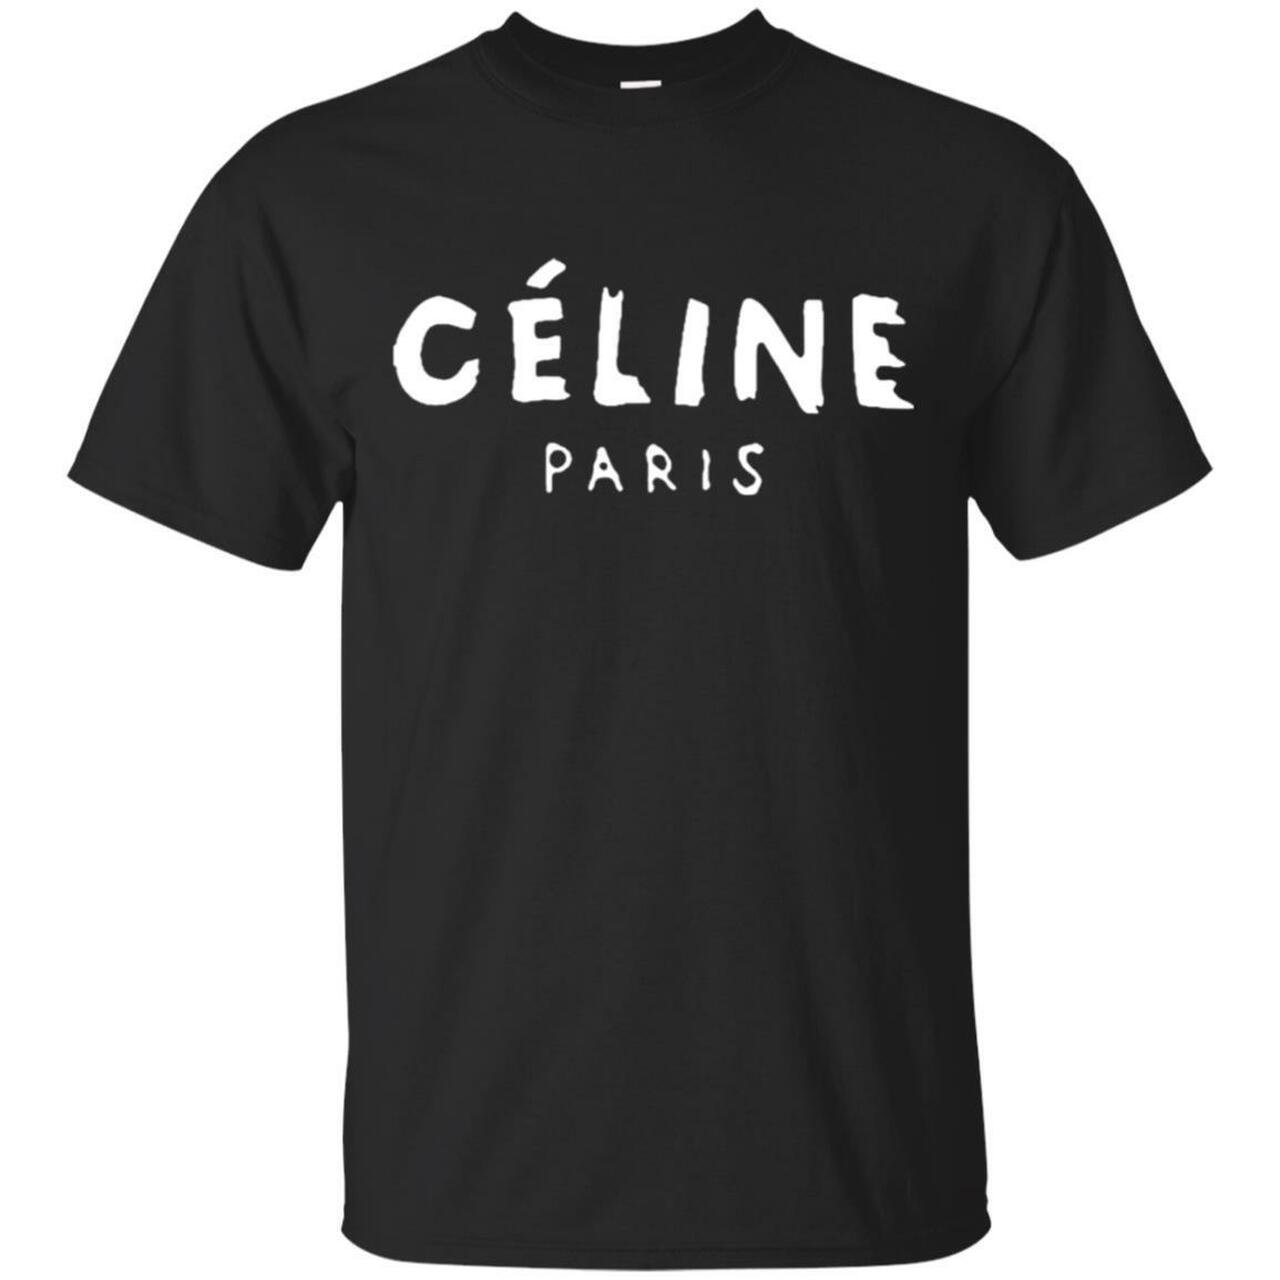 Céline Paris Logo T-Shirt in Black.jpg